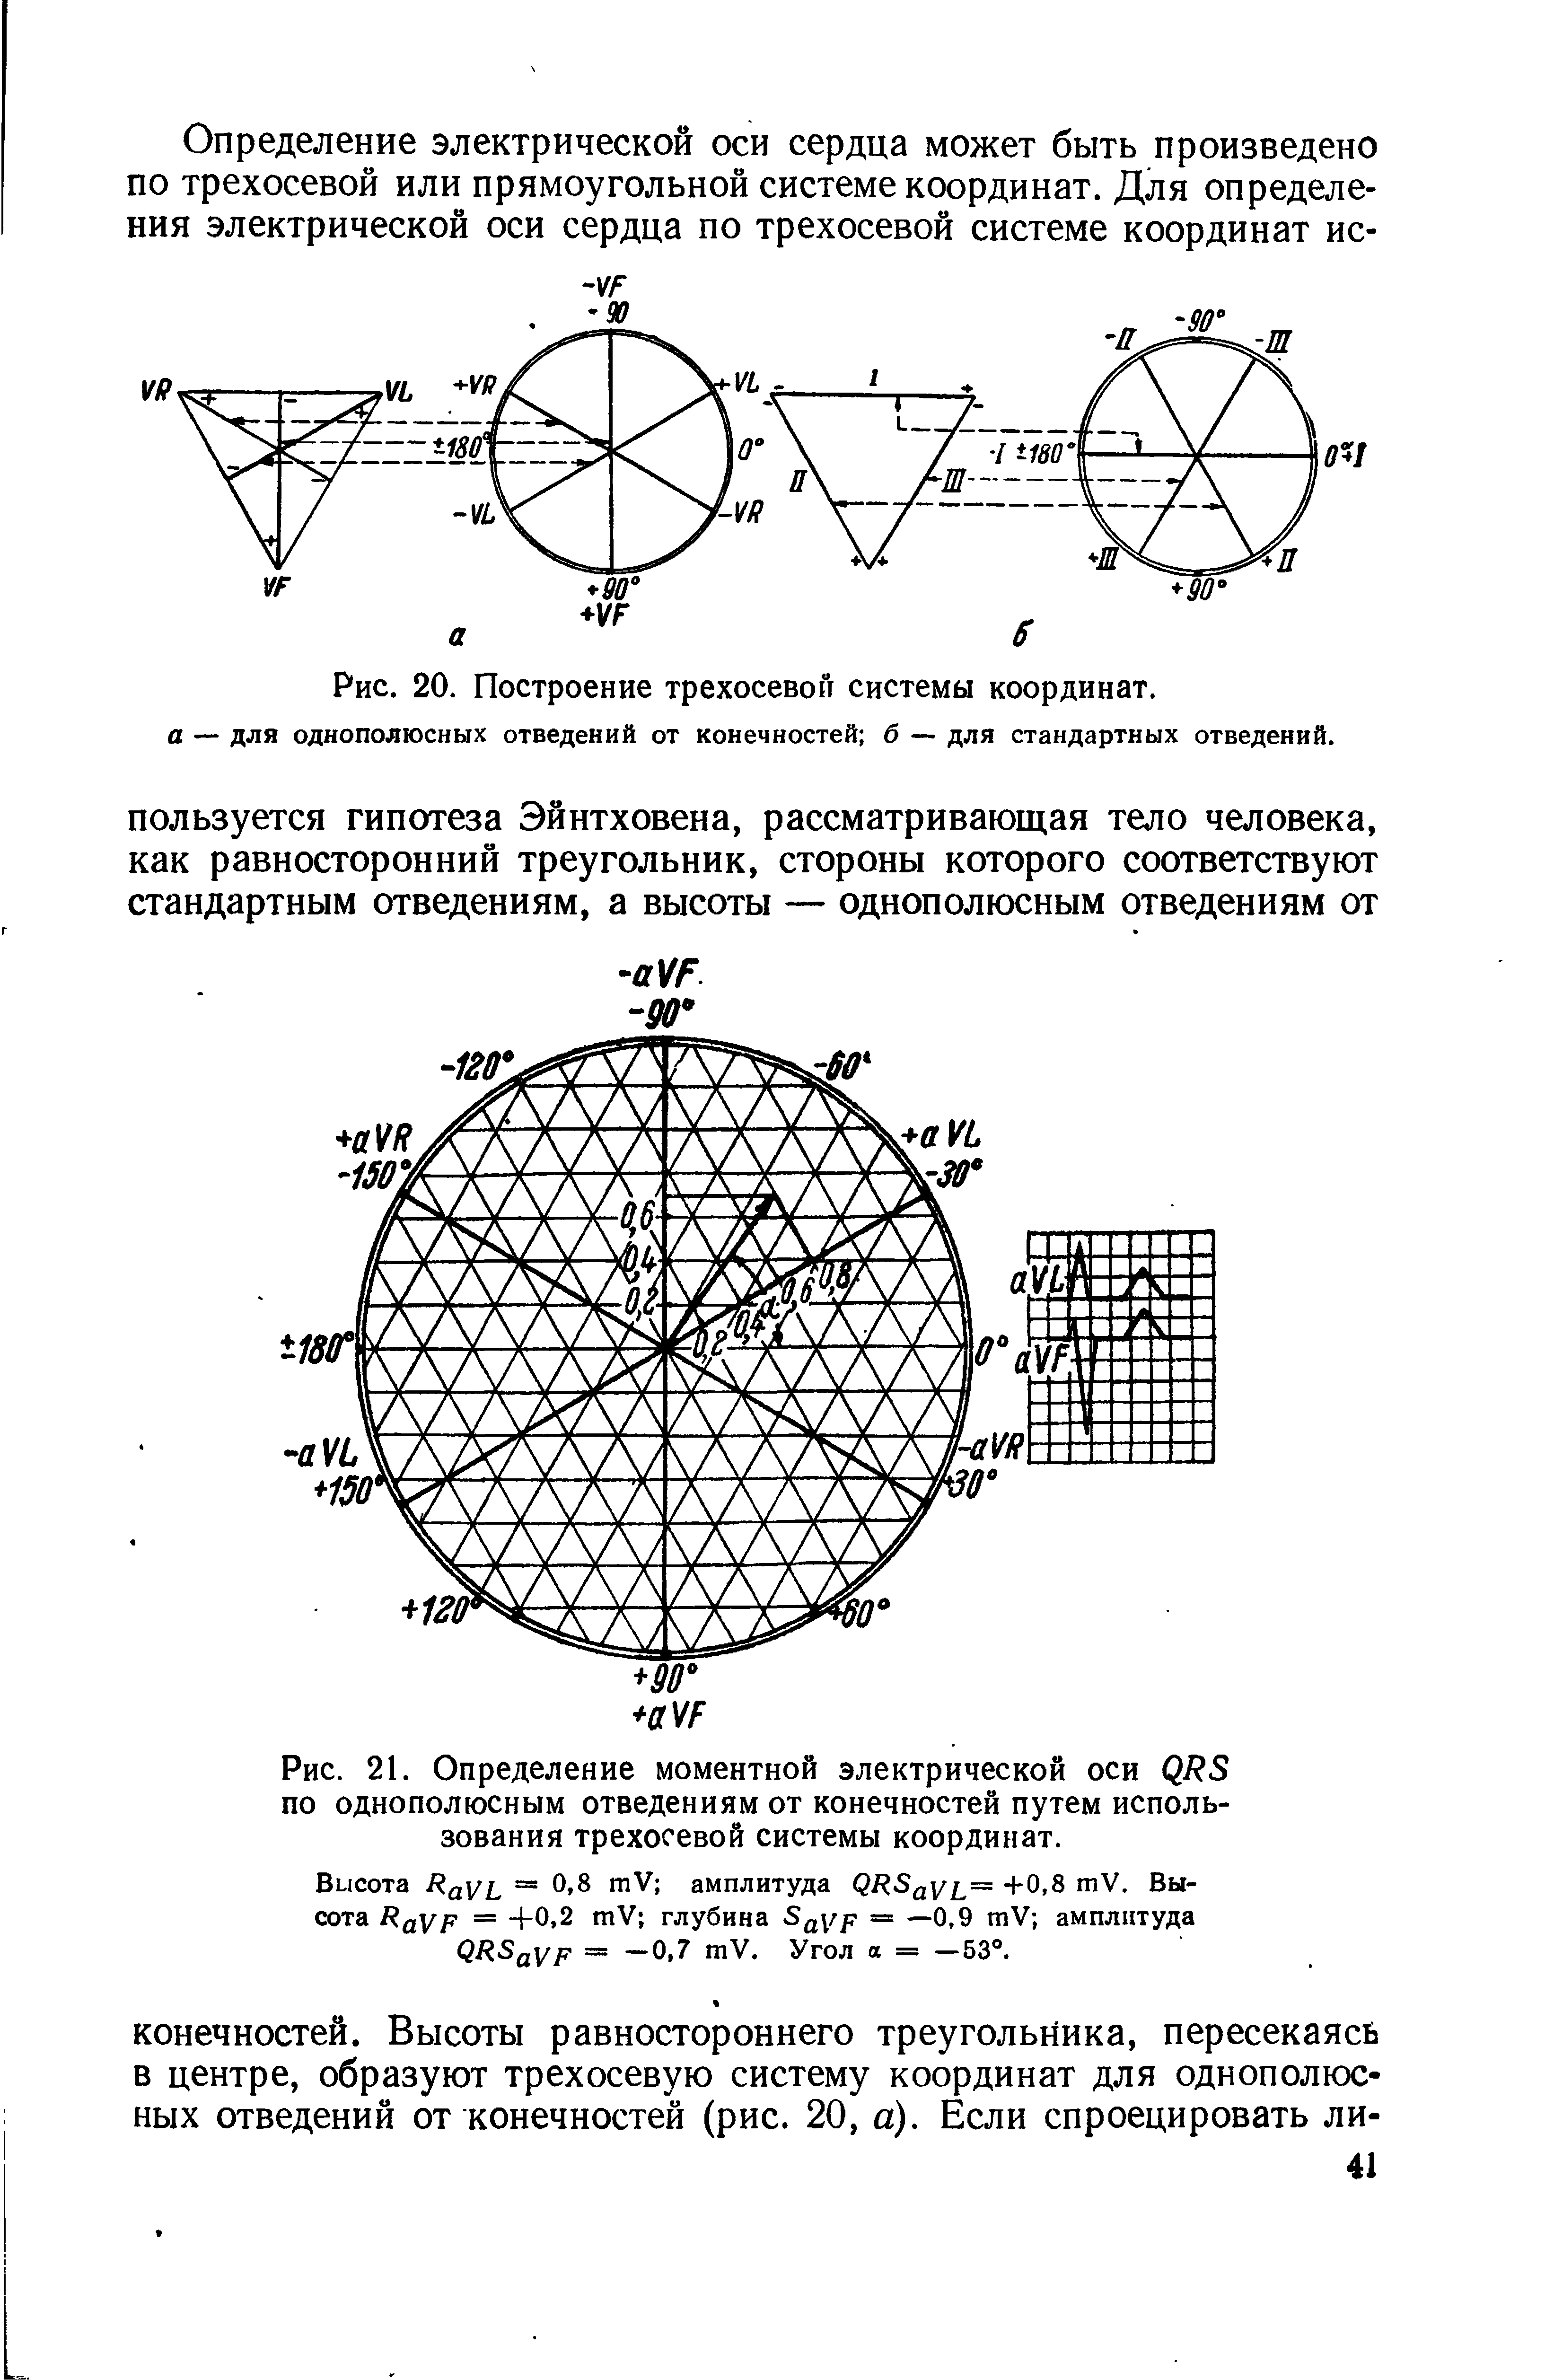 Рис. 21. Определение моментной электрической оси по однополюсным отведениям от конечностей путем использования трехосевой системы координат.